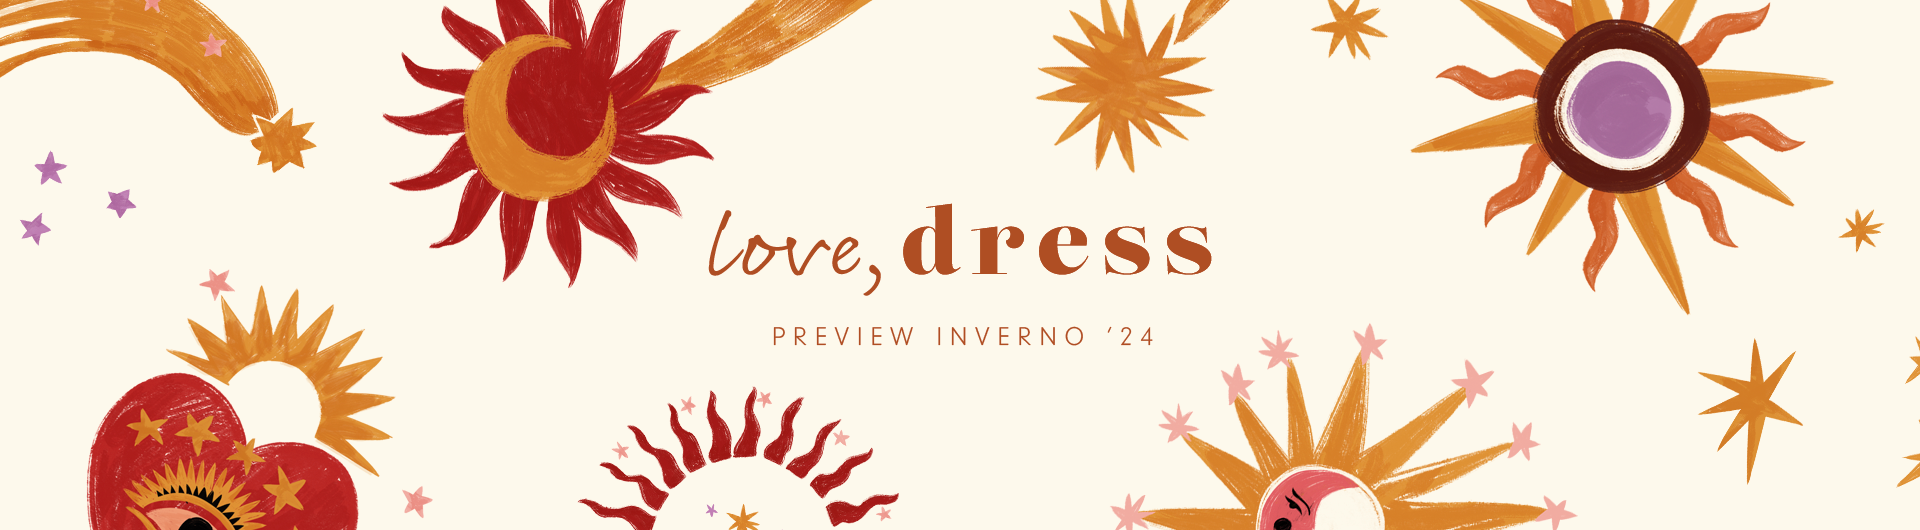 Preview da coleção Liberdade da Dress To. A coleção inclui vestidos, blusas, calças, macacões, saias, casacoes e mais! Love Dress